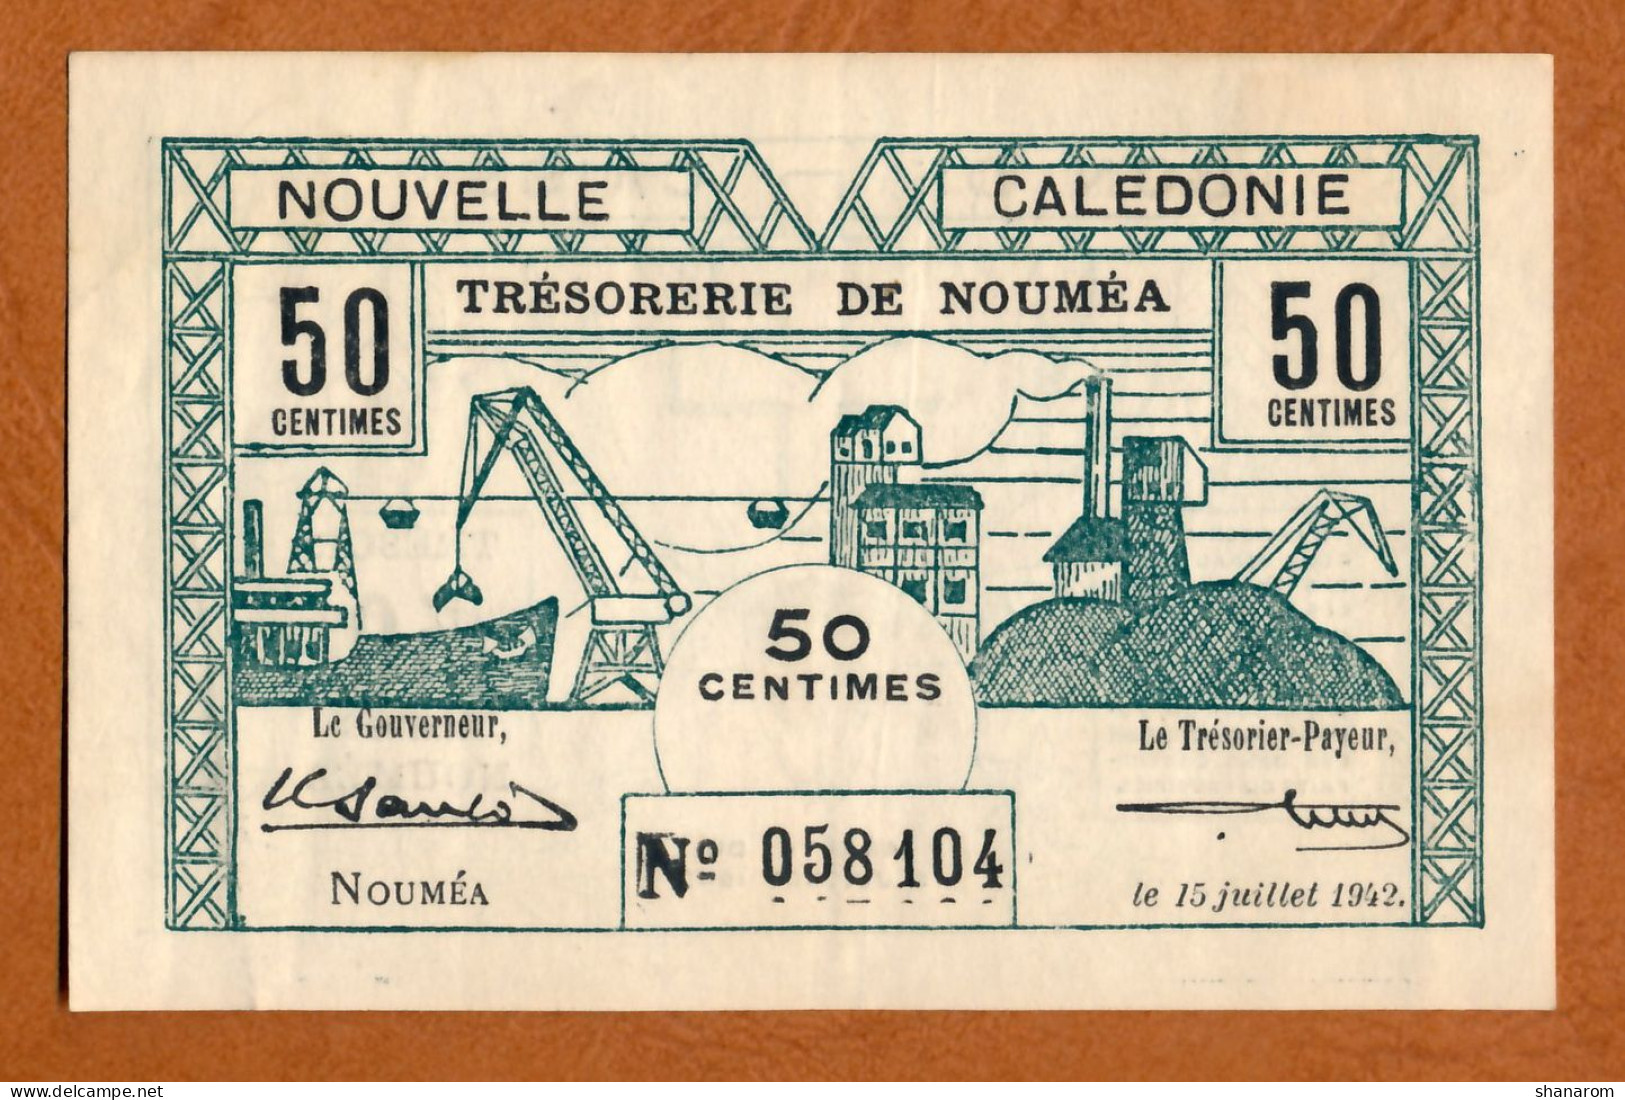 1942 // NOUVELLE CALEDONIE // TRESORERIE DE NOUMEA // JUILLET 1942 // Cinquante Centimes // VF-TTB - Nouméa (Neukaledonien 1873-1985)